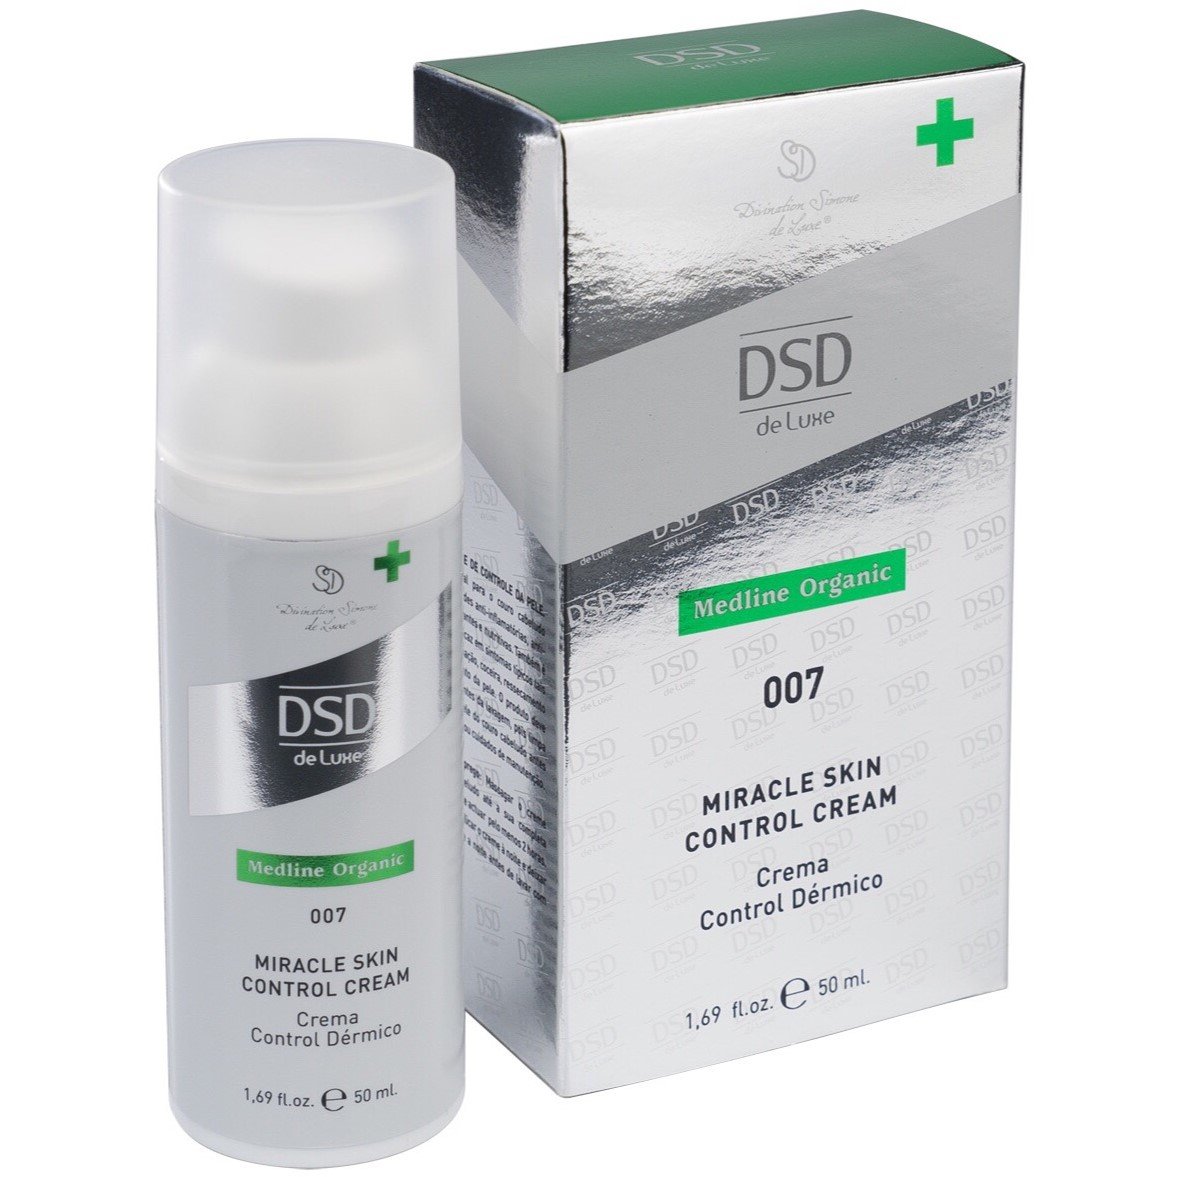 Крем DSD de Luxe 007 Medline Organic Miracle Skin Control Cream для лікування шкіри голови, 50 мл - фото 1